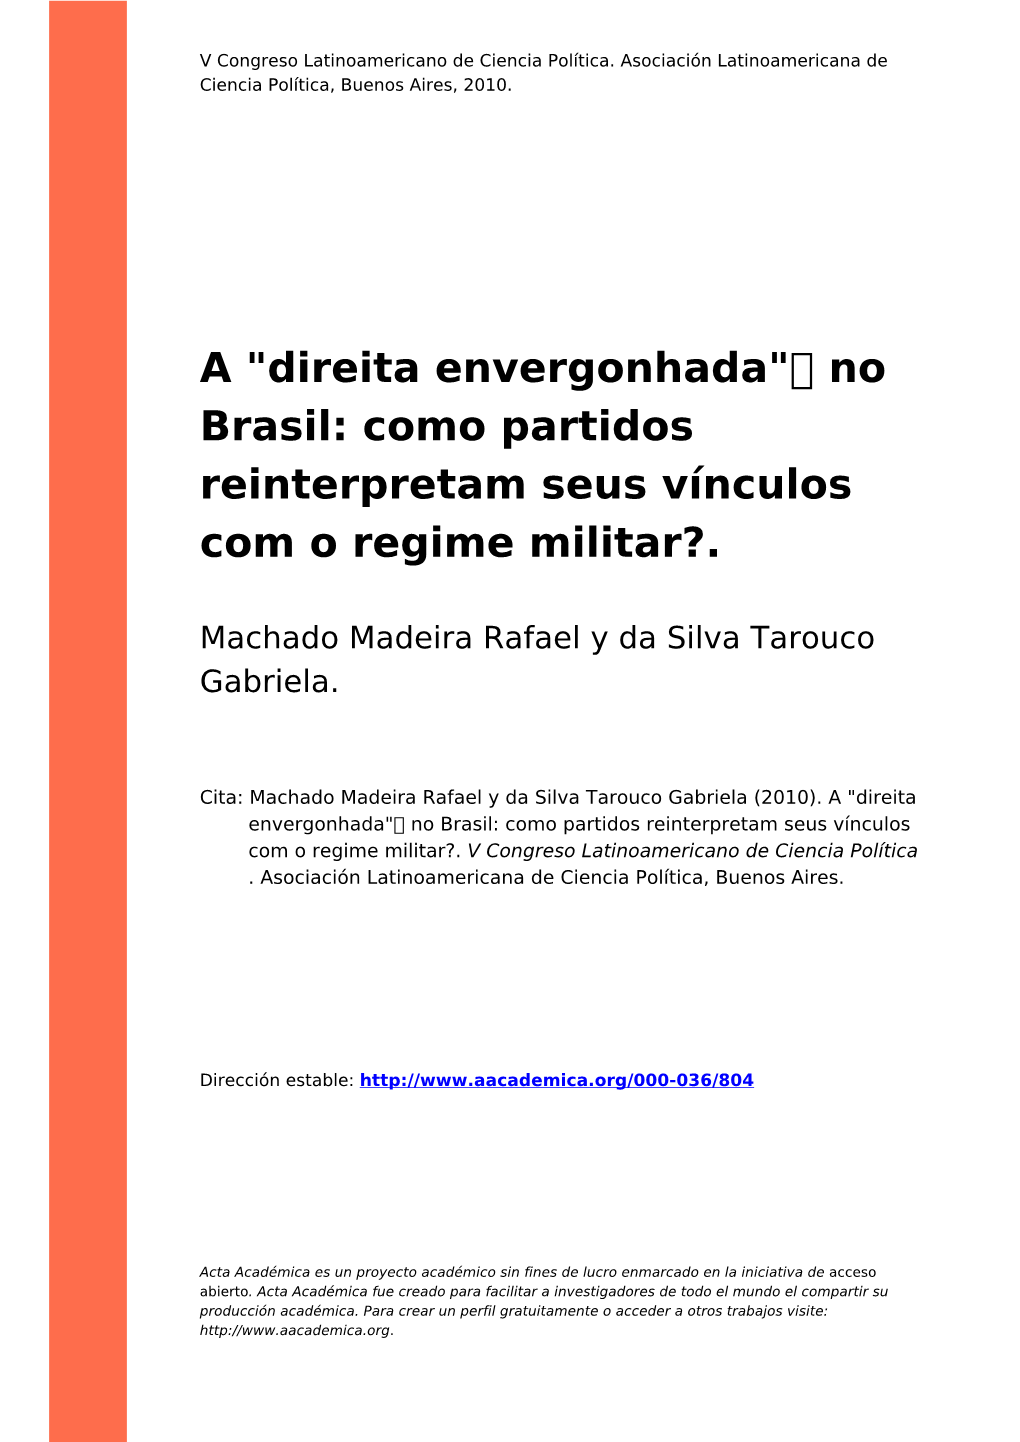 A "Direita Envergonhada" No Brasil: Como Partidos Reinterpretam Seus